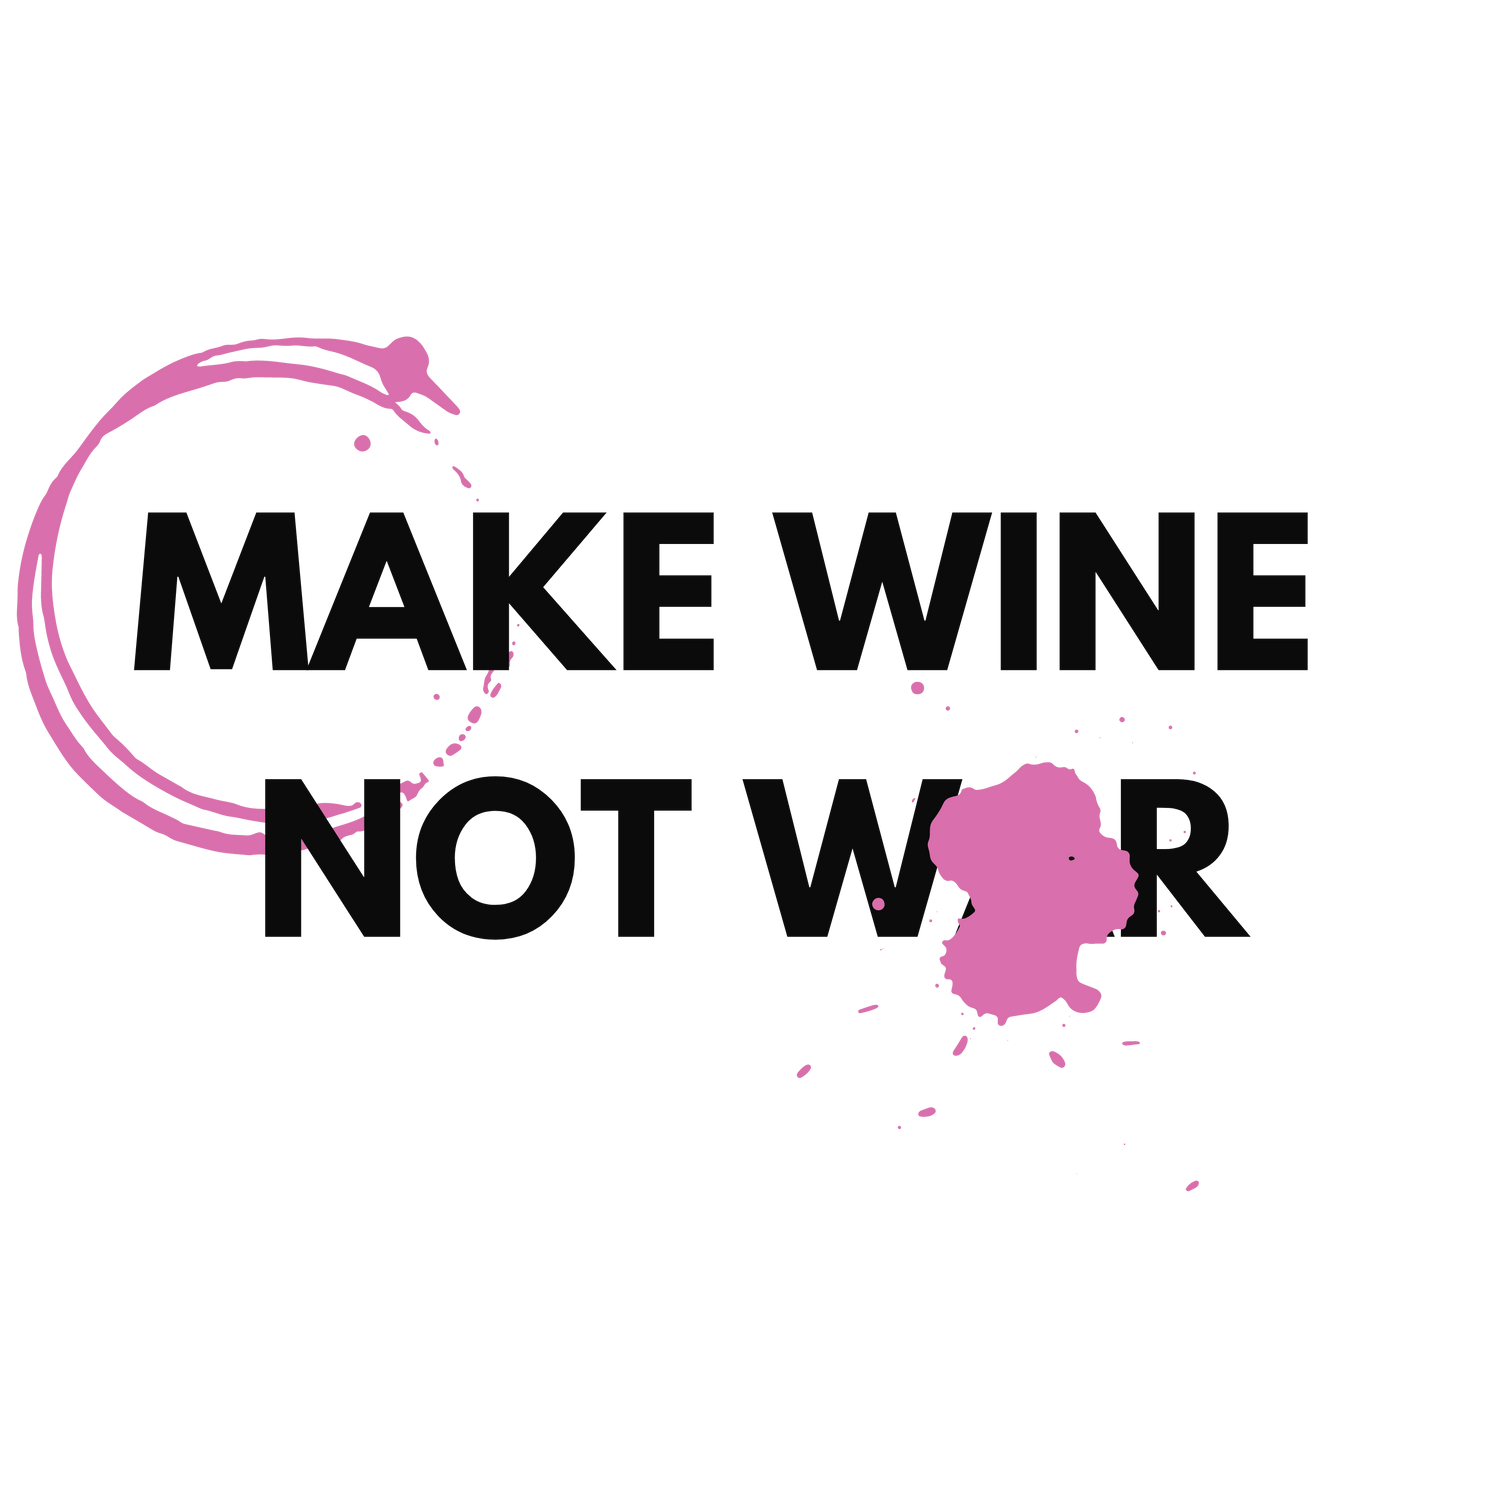 Wine Not War